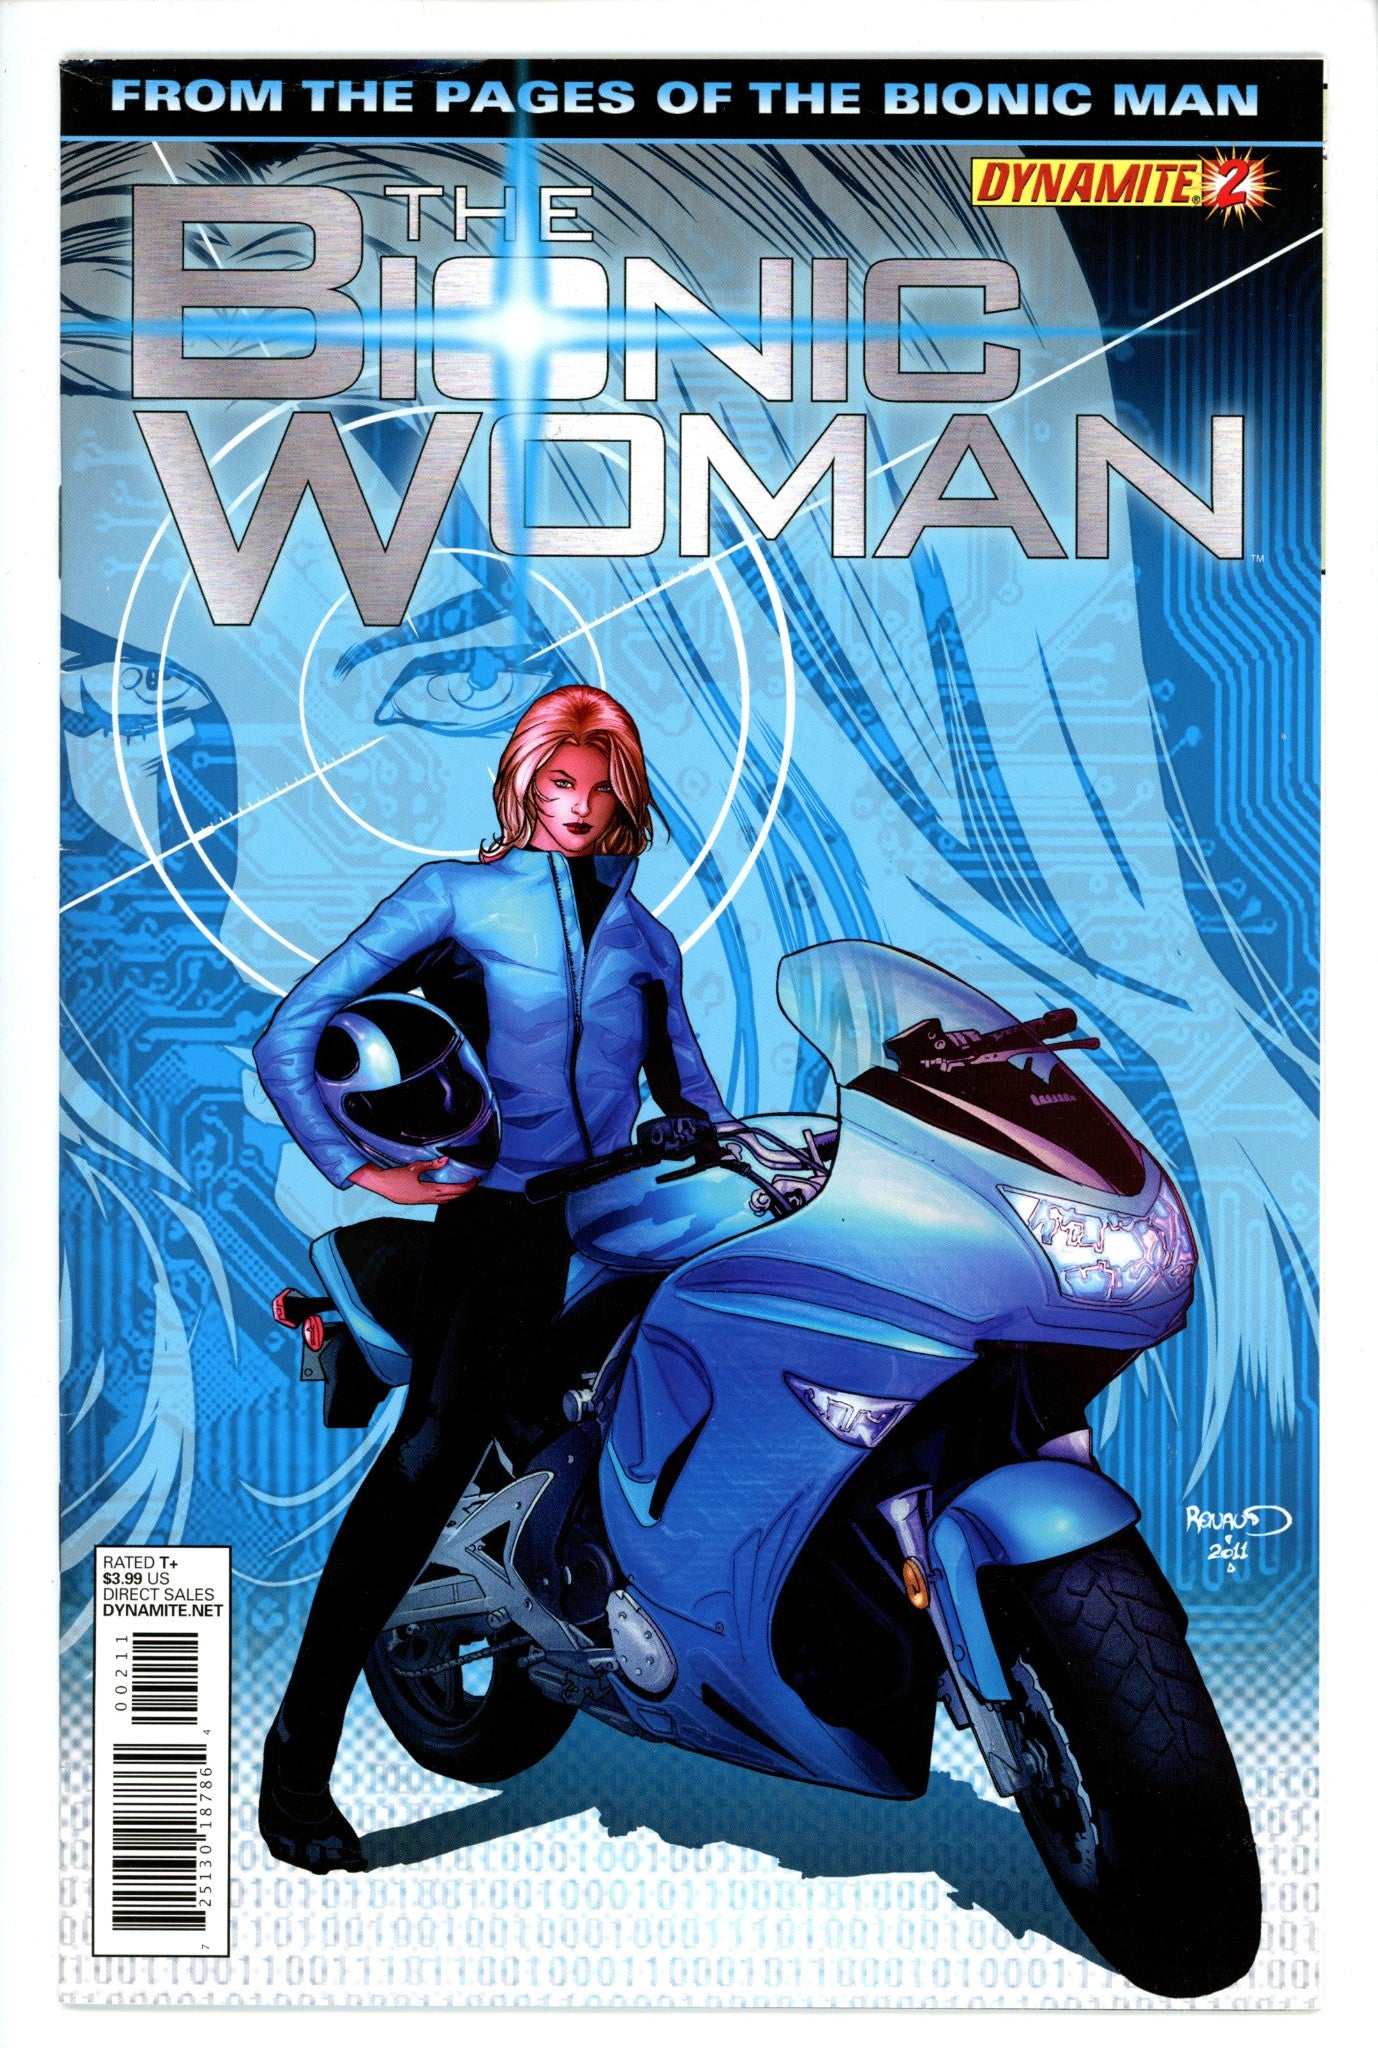 The Bionic Woman 2-Dynamite Entertainment-CaptCan Comics Inc